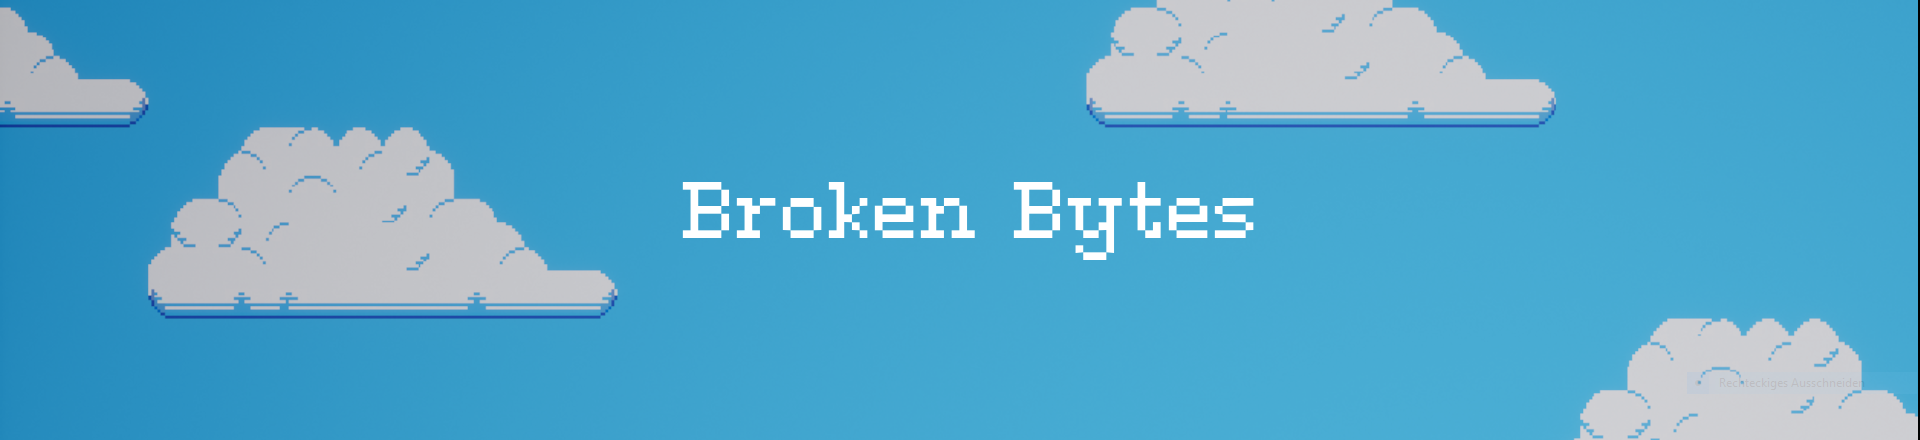 Broken Bytes